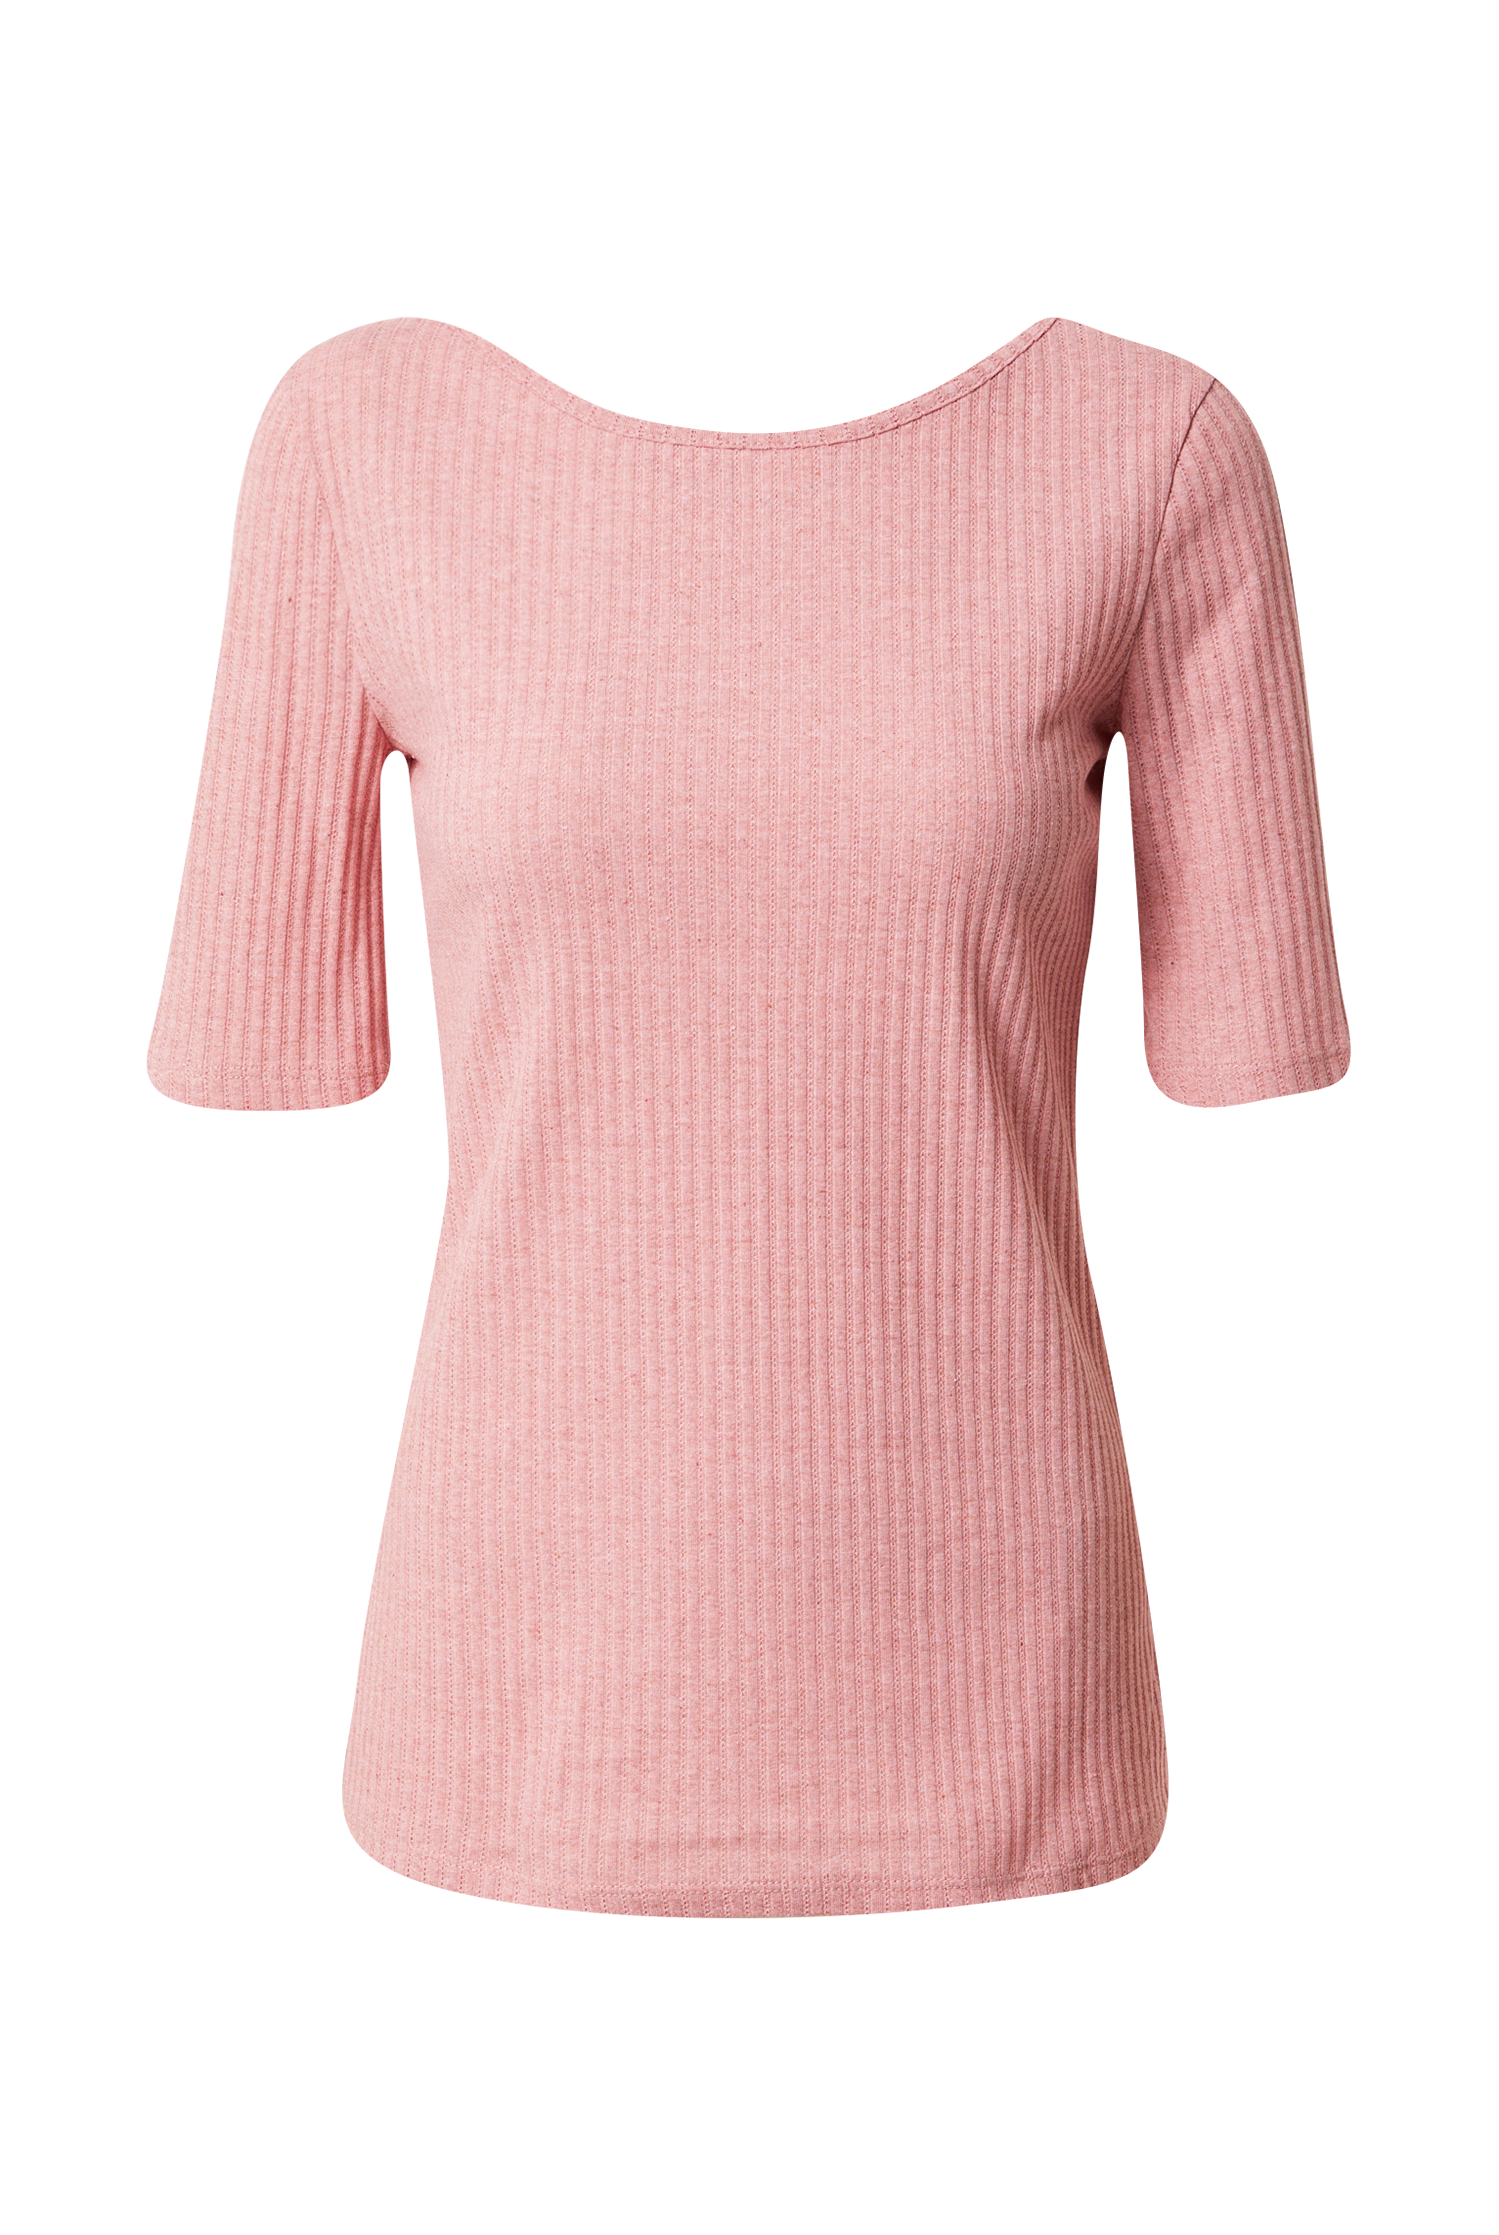 EDC BY ESPRIT Koszulka w kolorze Różowy Pudrowym 